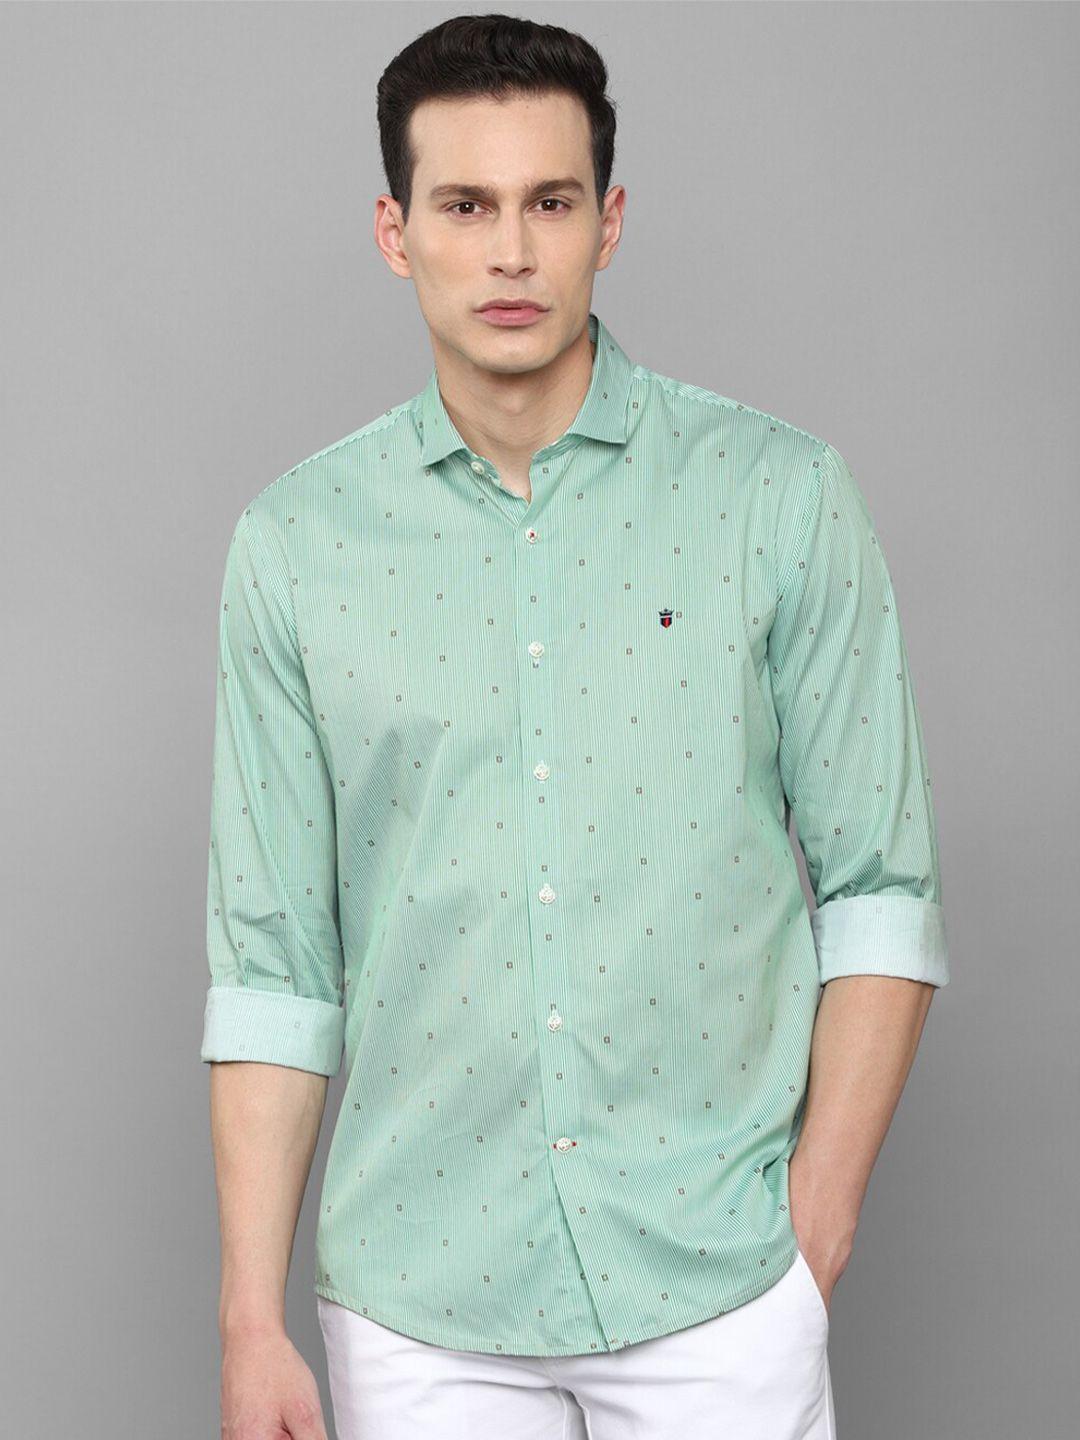 louis philippe sport men green slim fit printed casual shirt